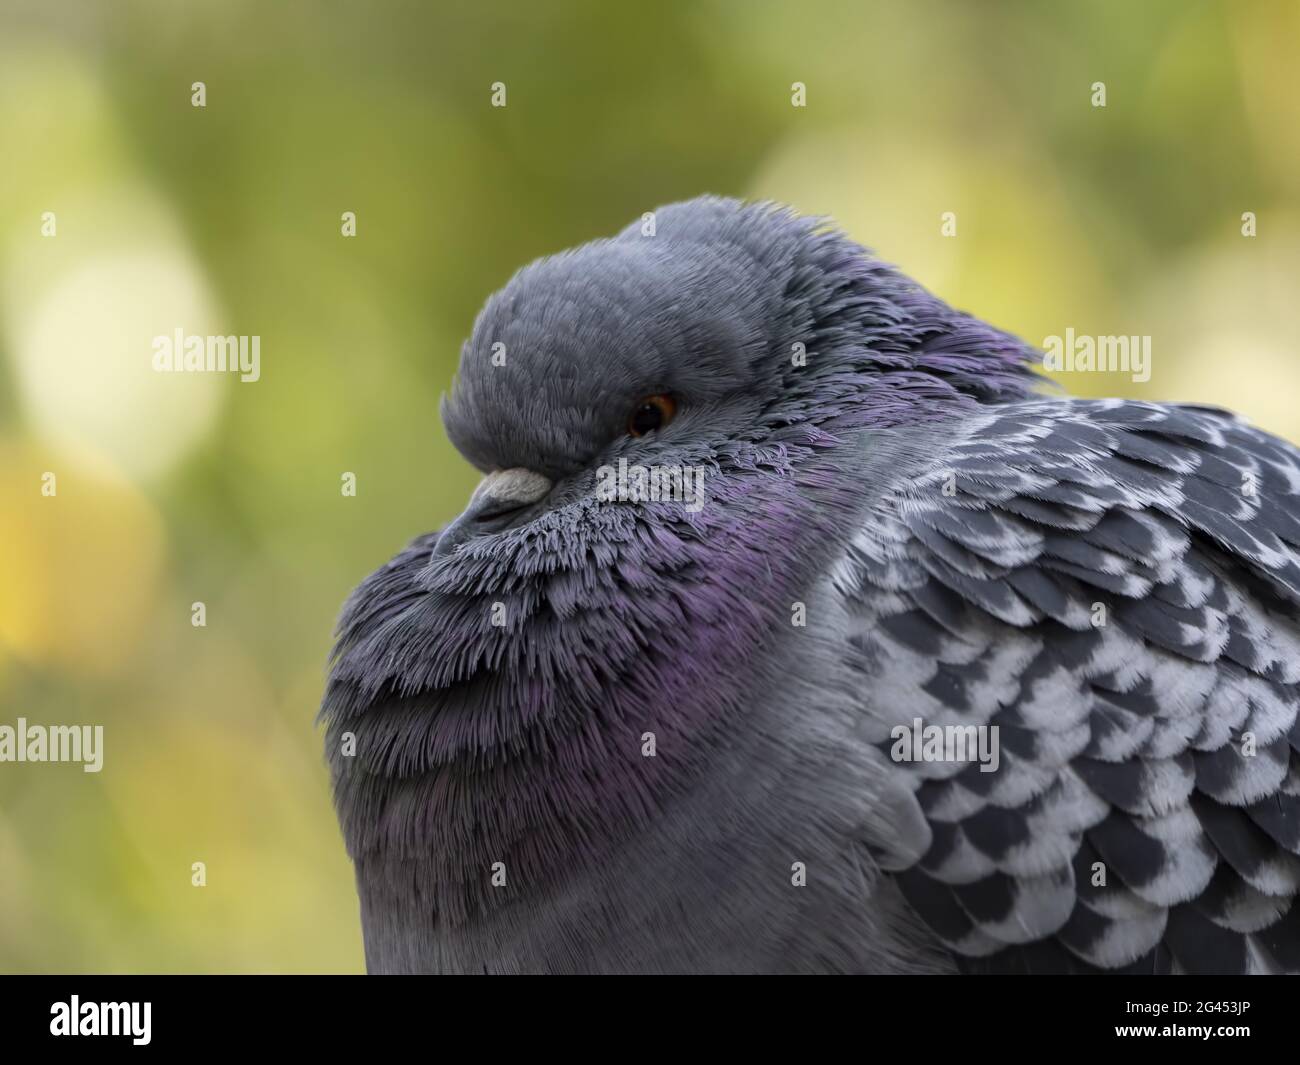 Un piccione viaggiatore pone di fronte alla lente della fotocamera Foto Stock